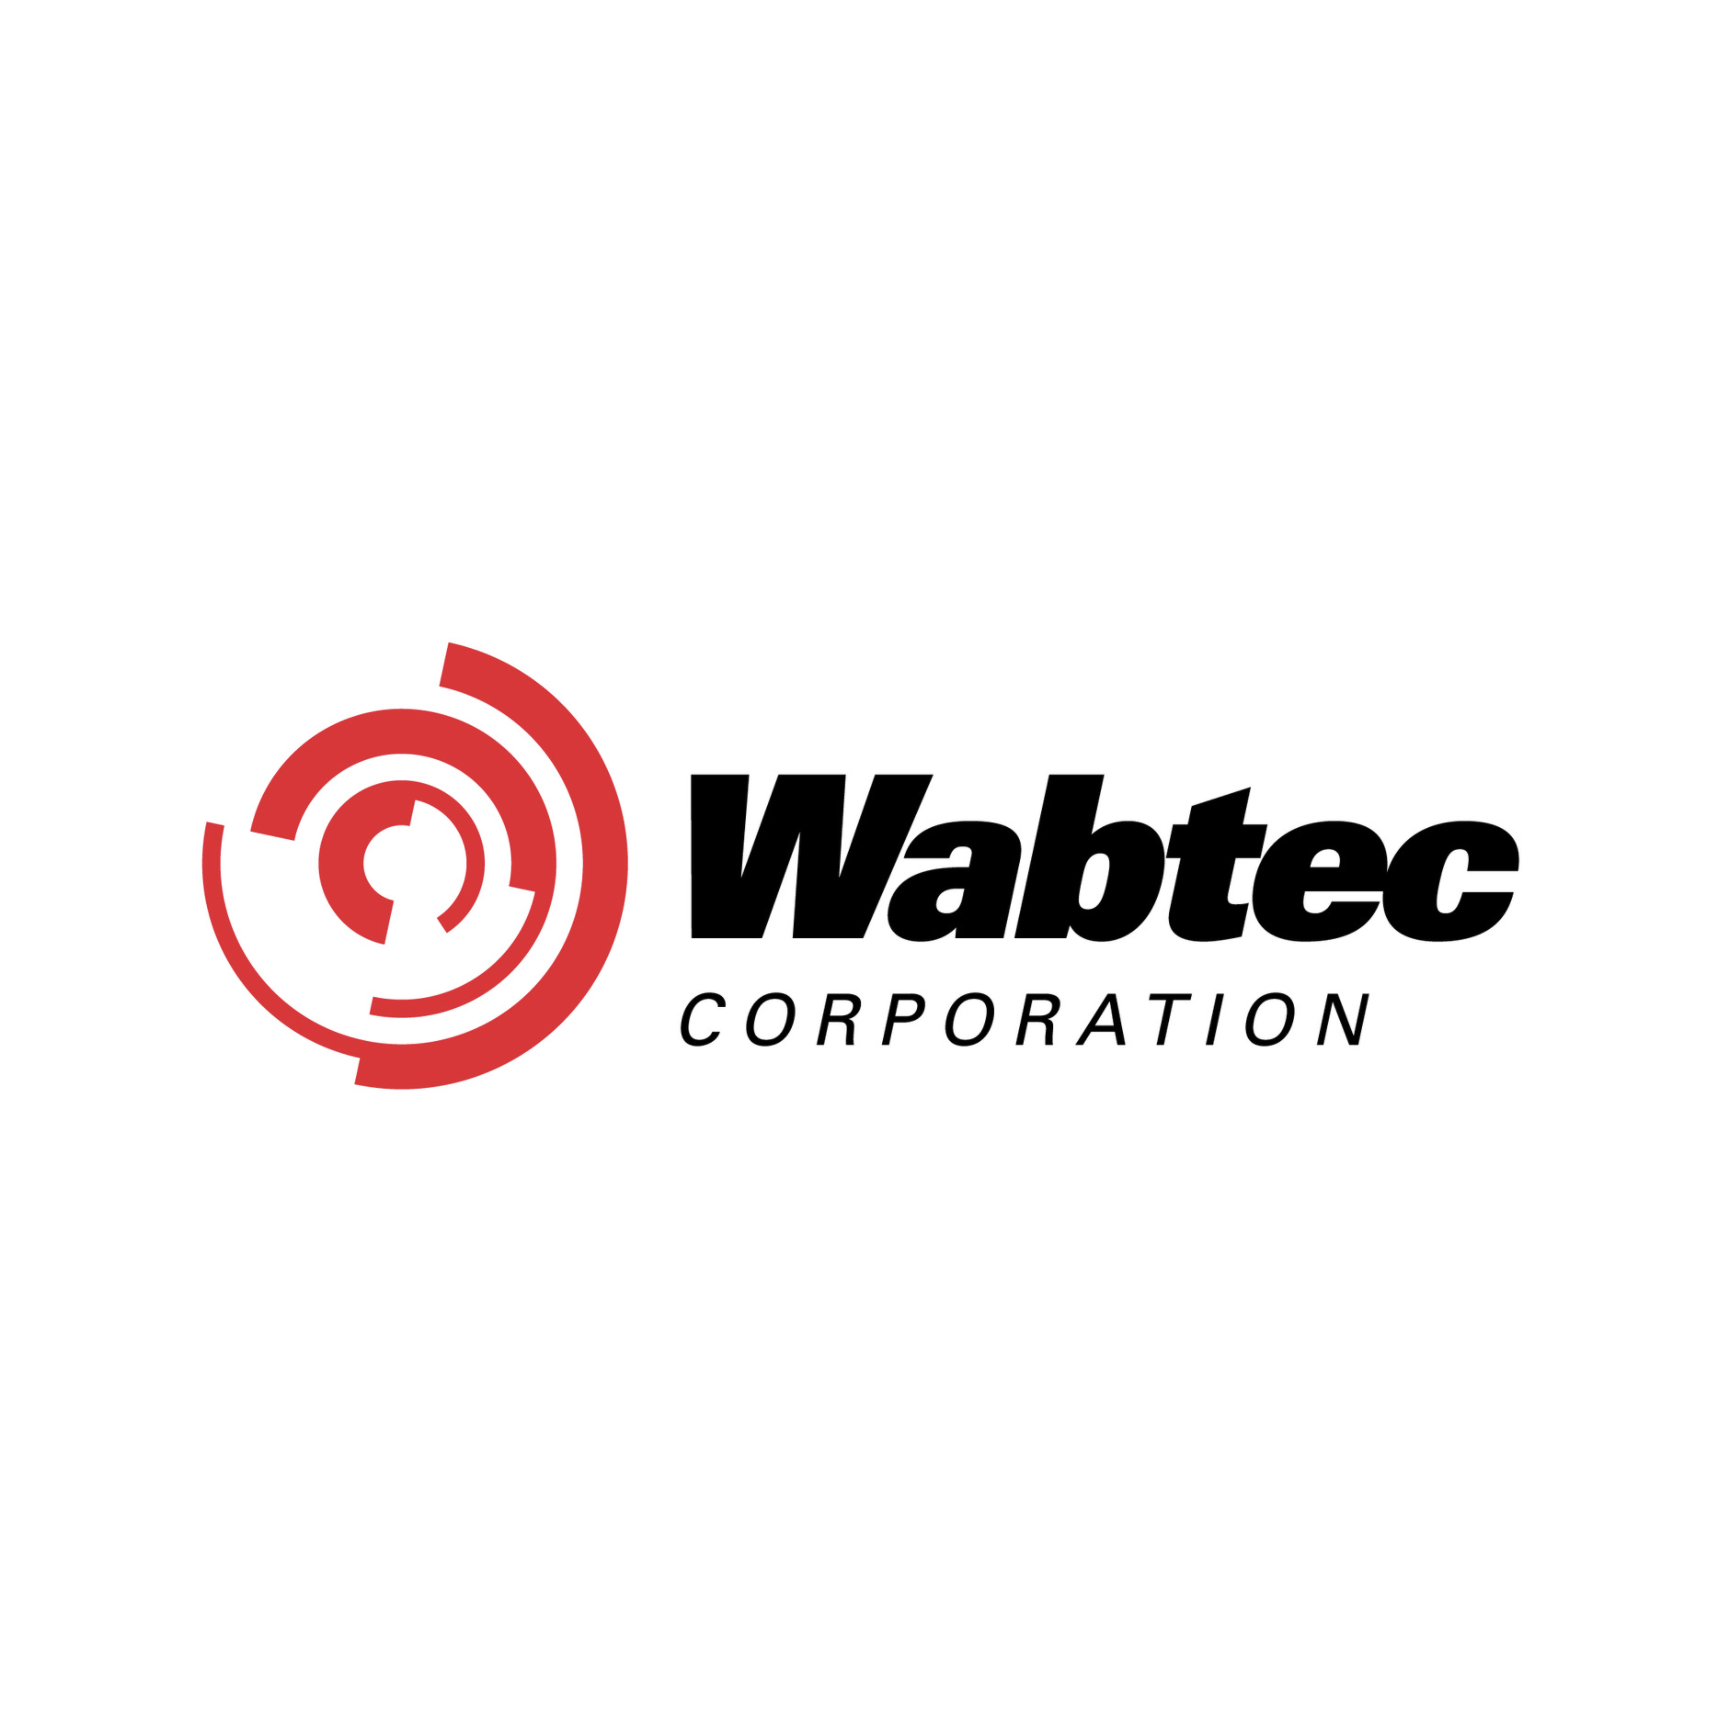 Wabtec: Safer, Smarter, Greener